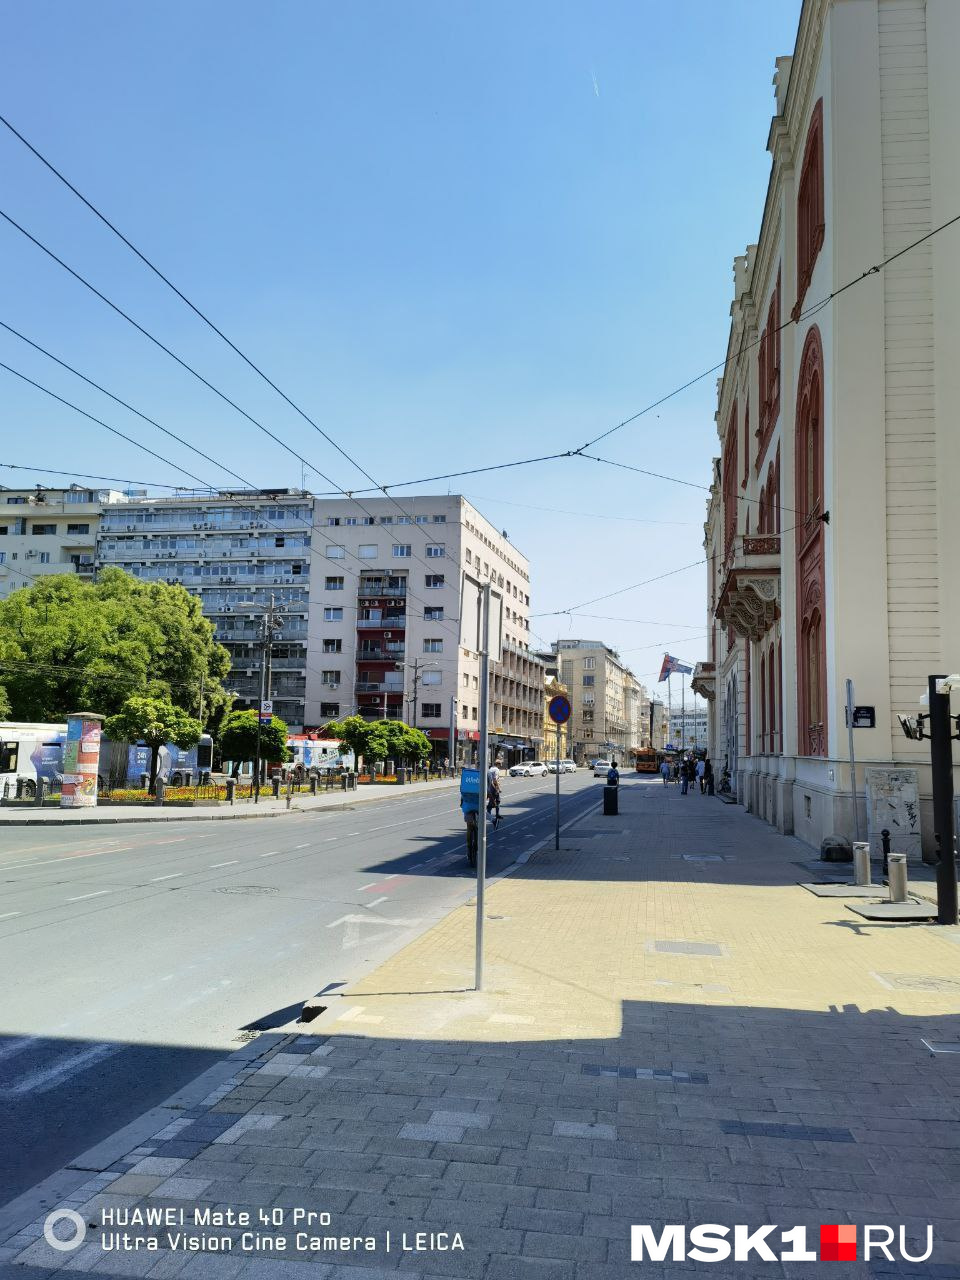 Здания в Белграде чем-то напоминают Москву